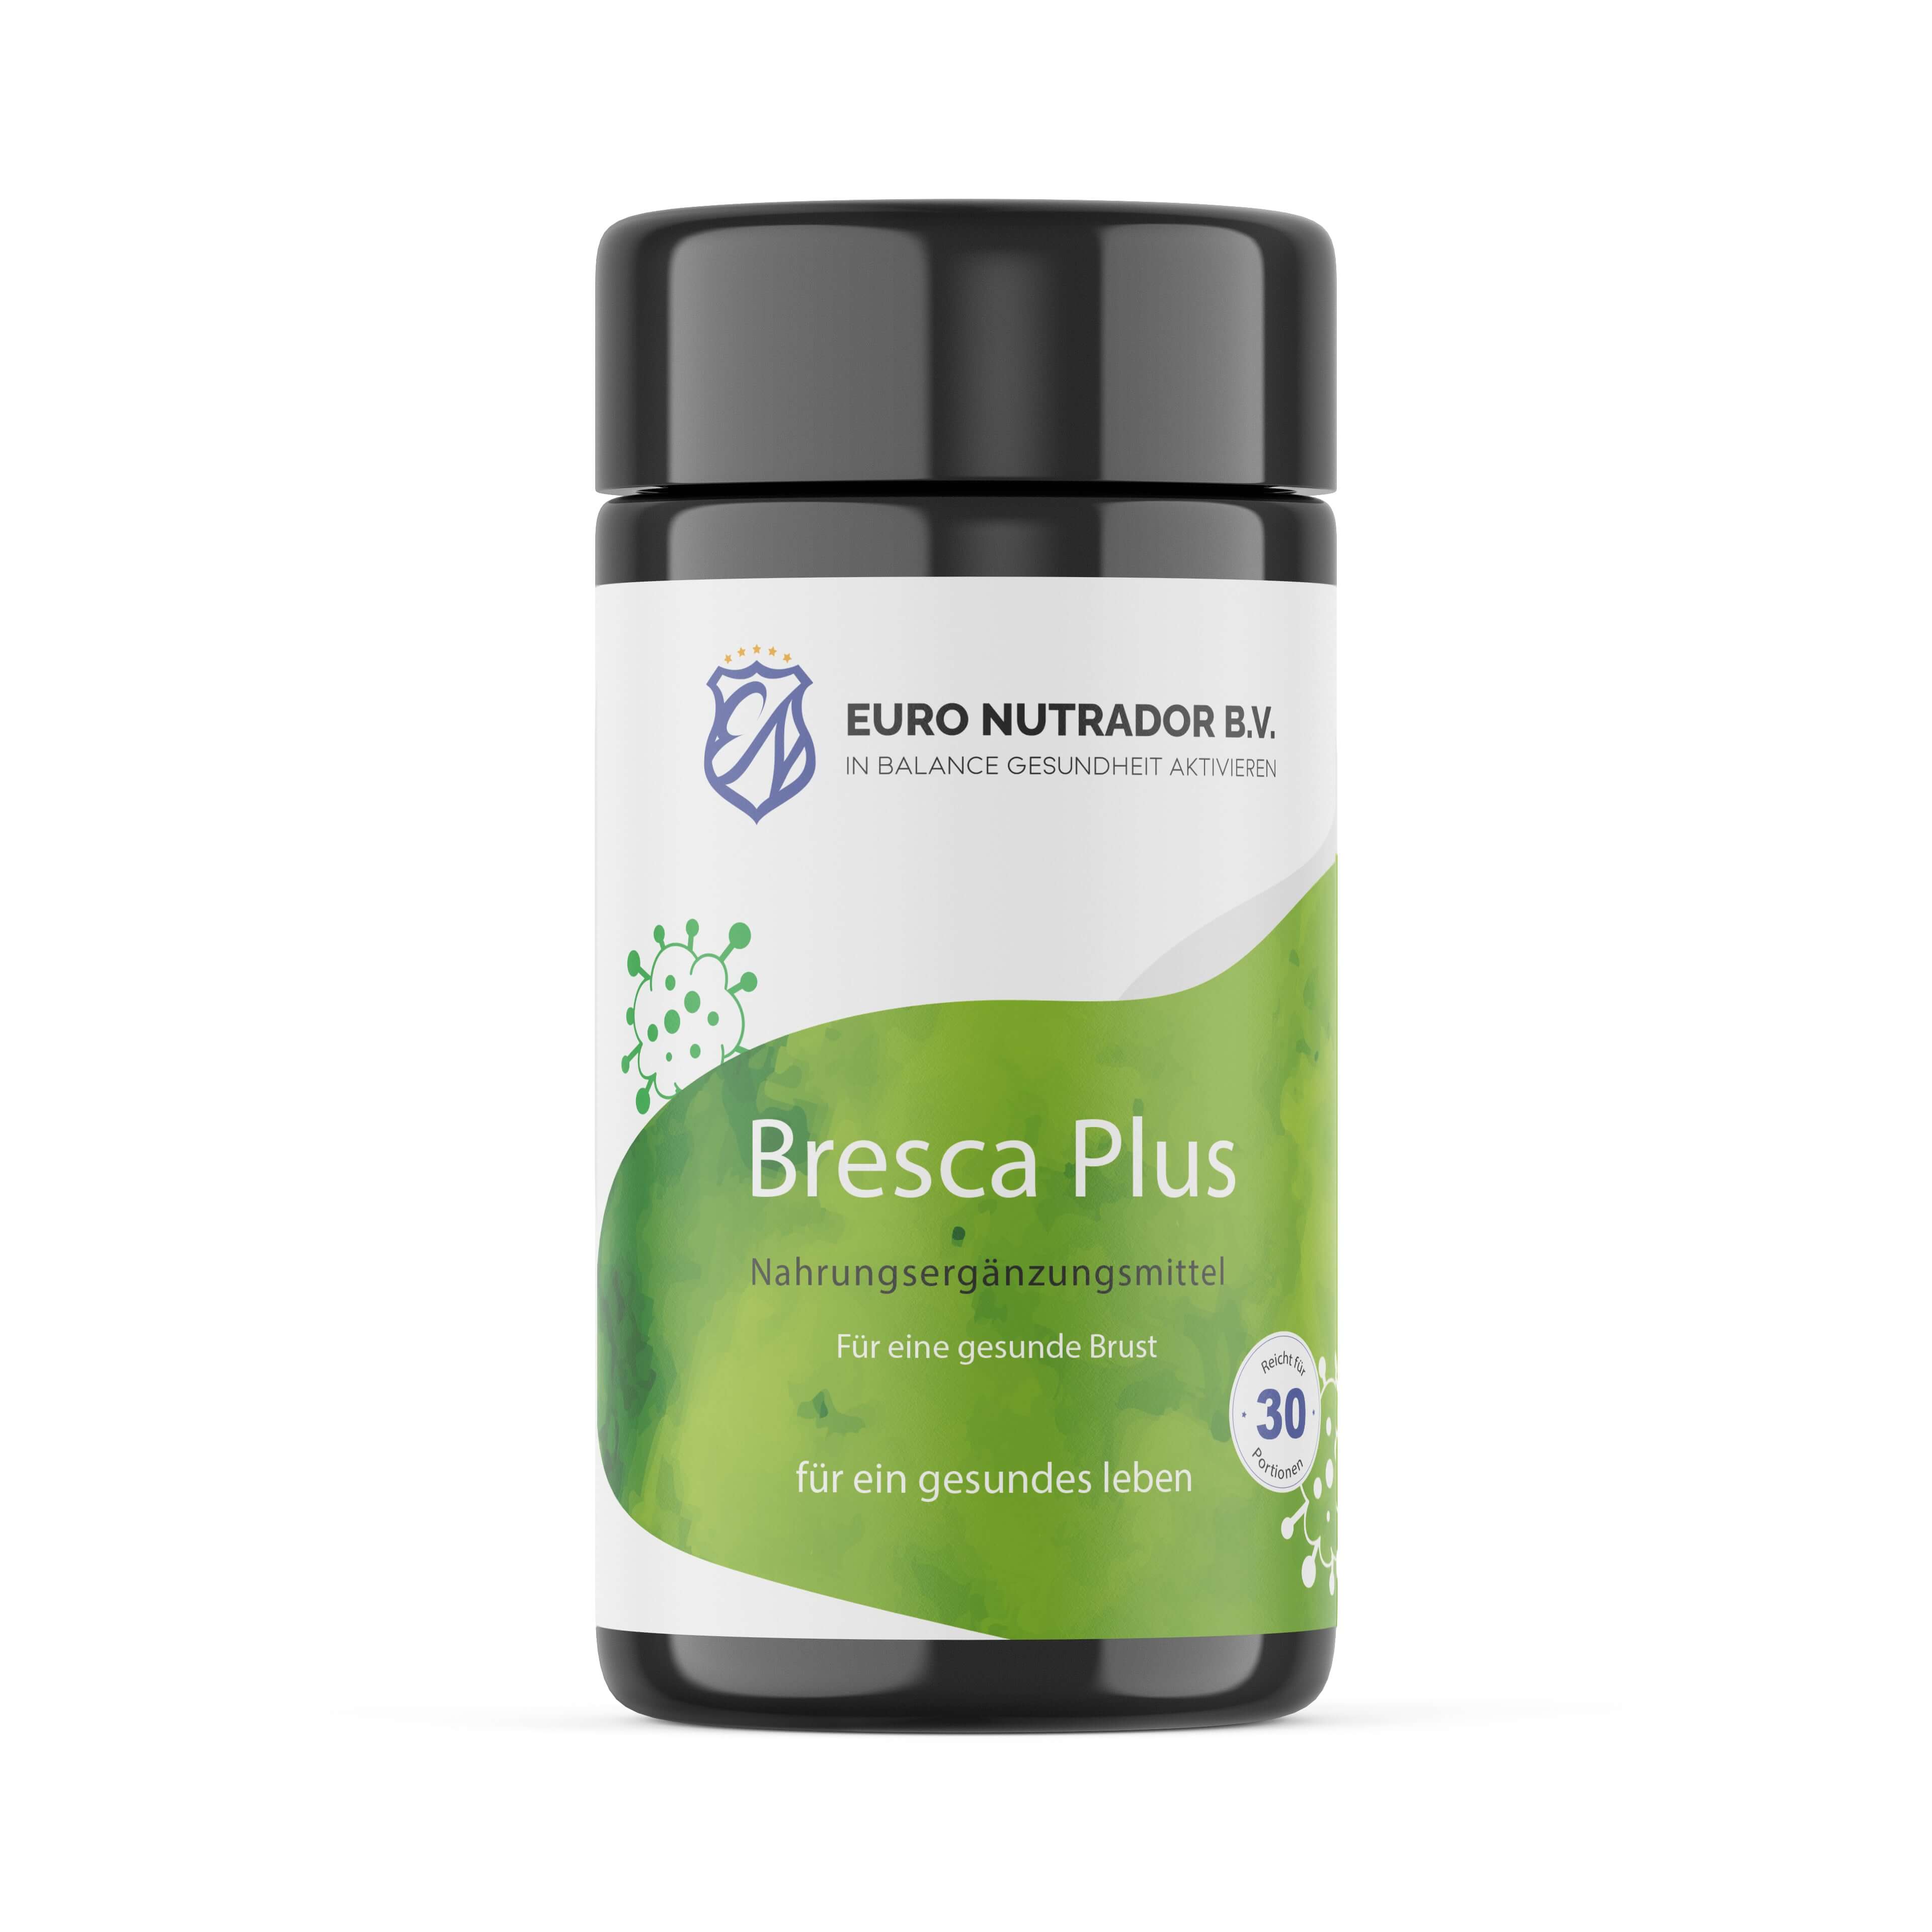 Bresca Plus - Natürliches Nahrungsergänzungsmittel zur Unterstützung des Immunsystems von Brustkrebspatientinnen